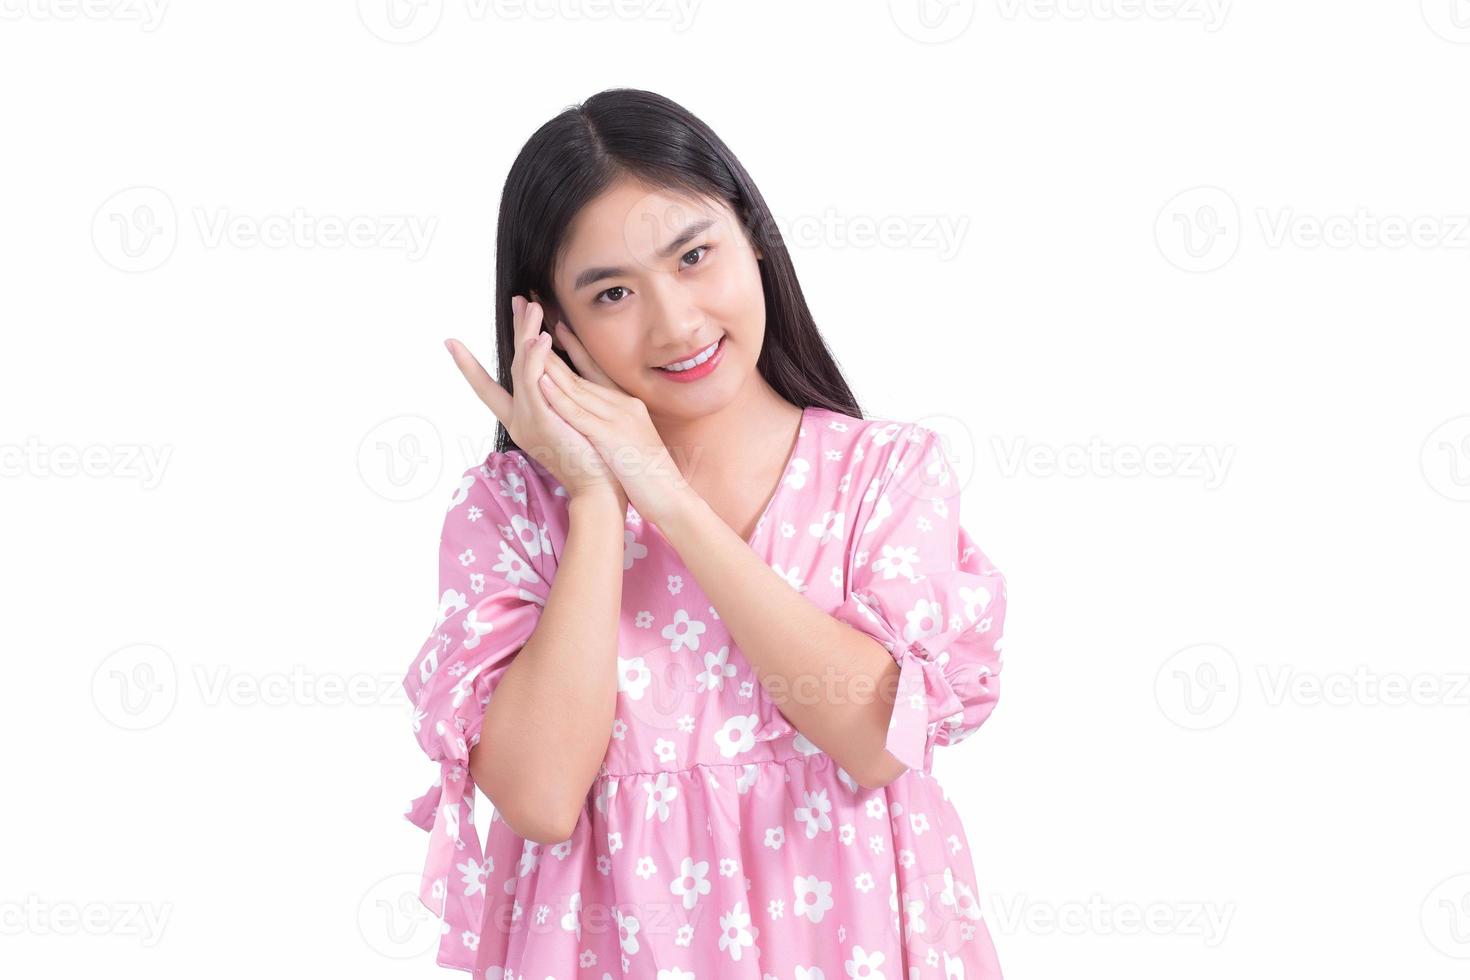 hermosa chica asiática con vestido rosa y pelo largo negro. sus manos tocan la sonrisa de la mejilla, muestran una piel hermosa sobre fondo blanco. foto